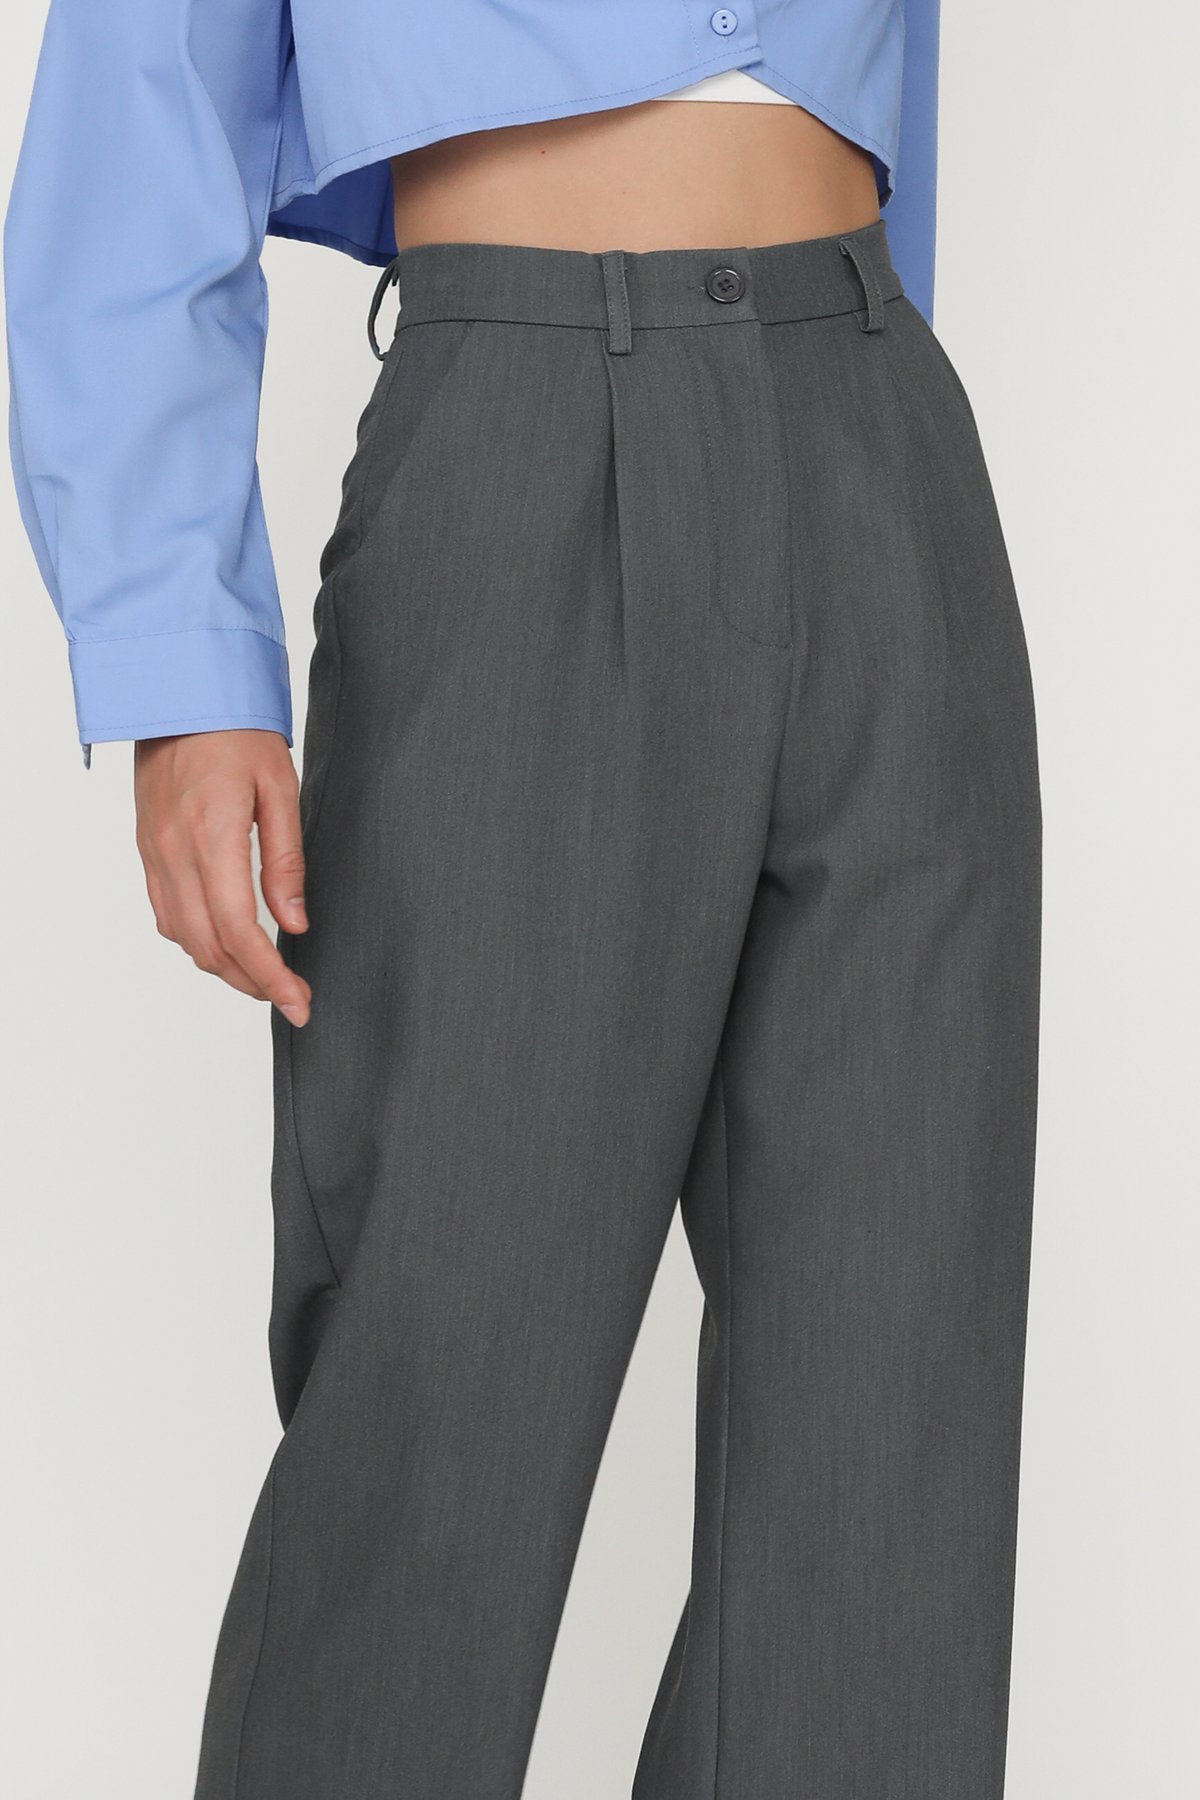 Petite Jacque Straight Leg Pants (Dark Suit Grey)